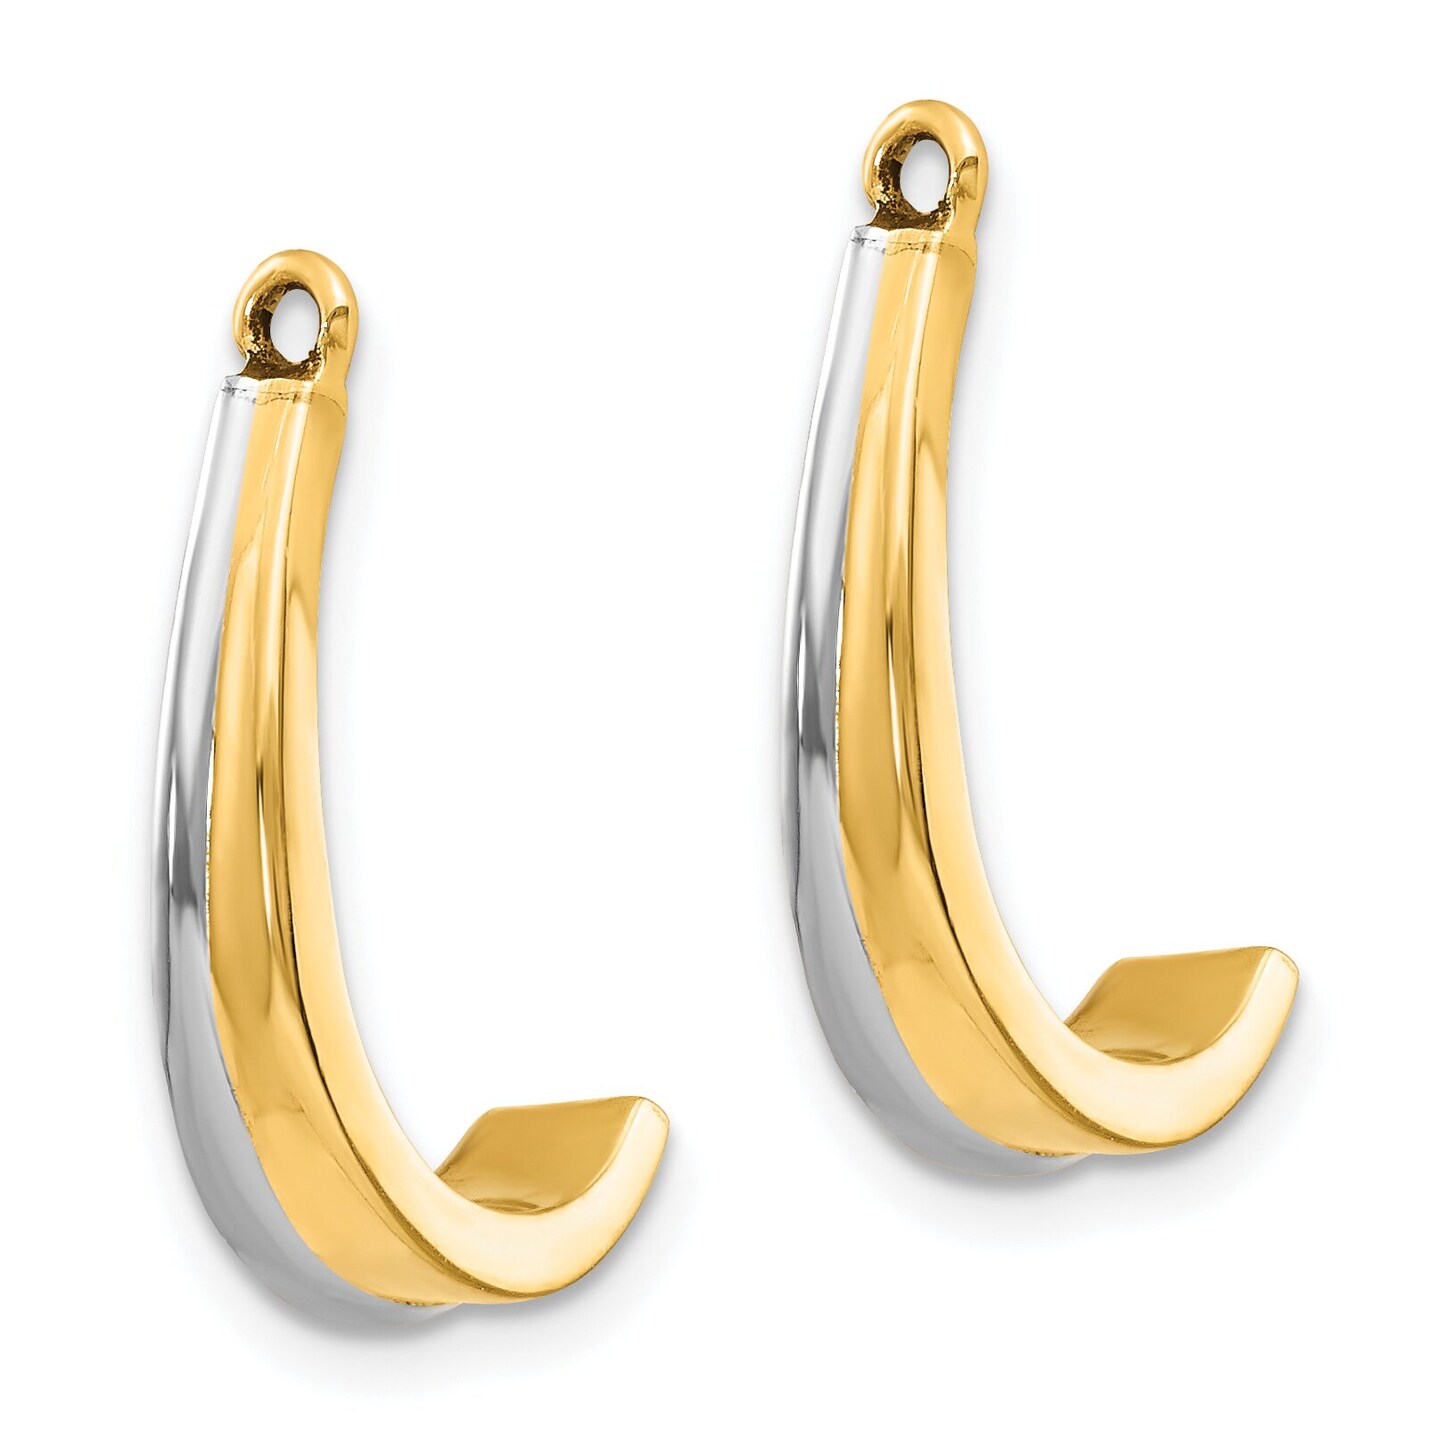 14K Two Tone Gold J Hoop Earring Jackets Jewelry 18mm x 3mm